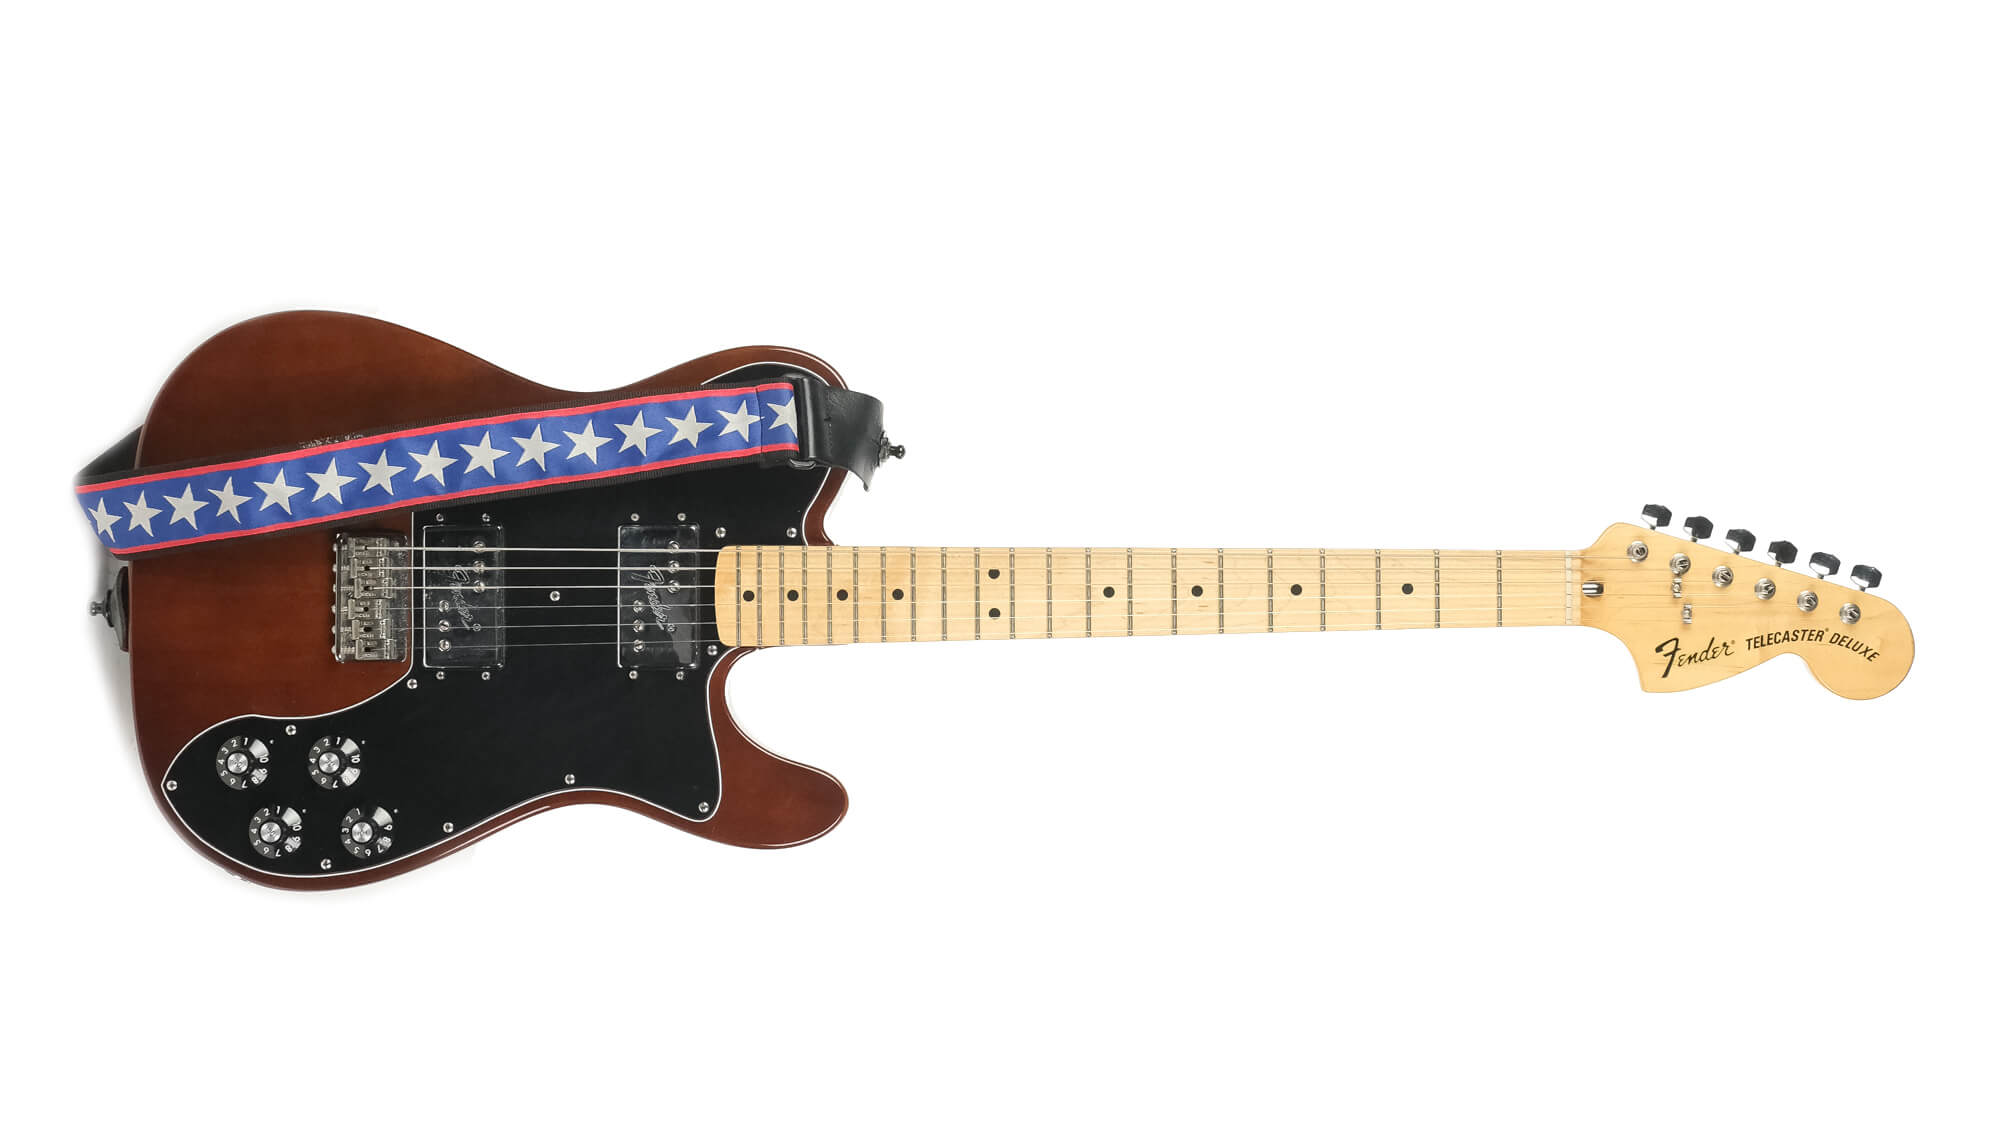 Frank Iero's Fender Telecaster 72 Deluxe Reissue